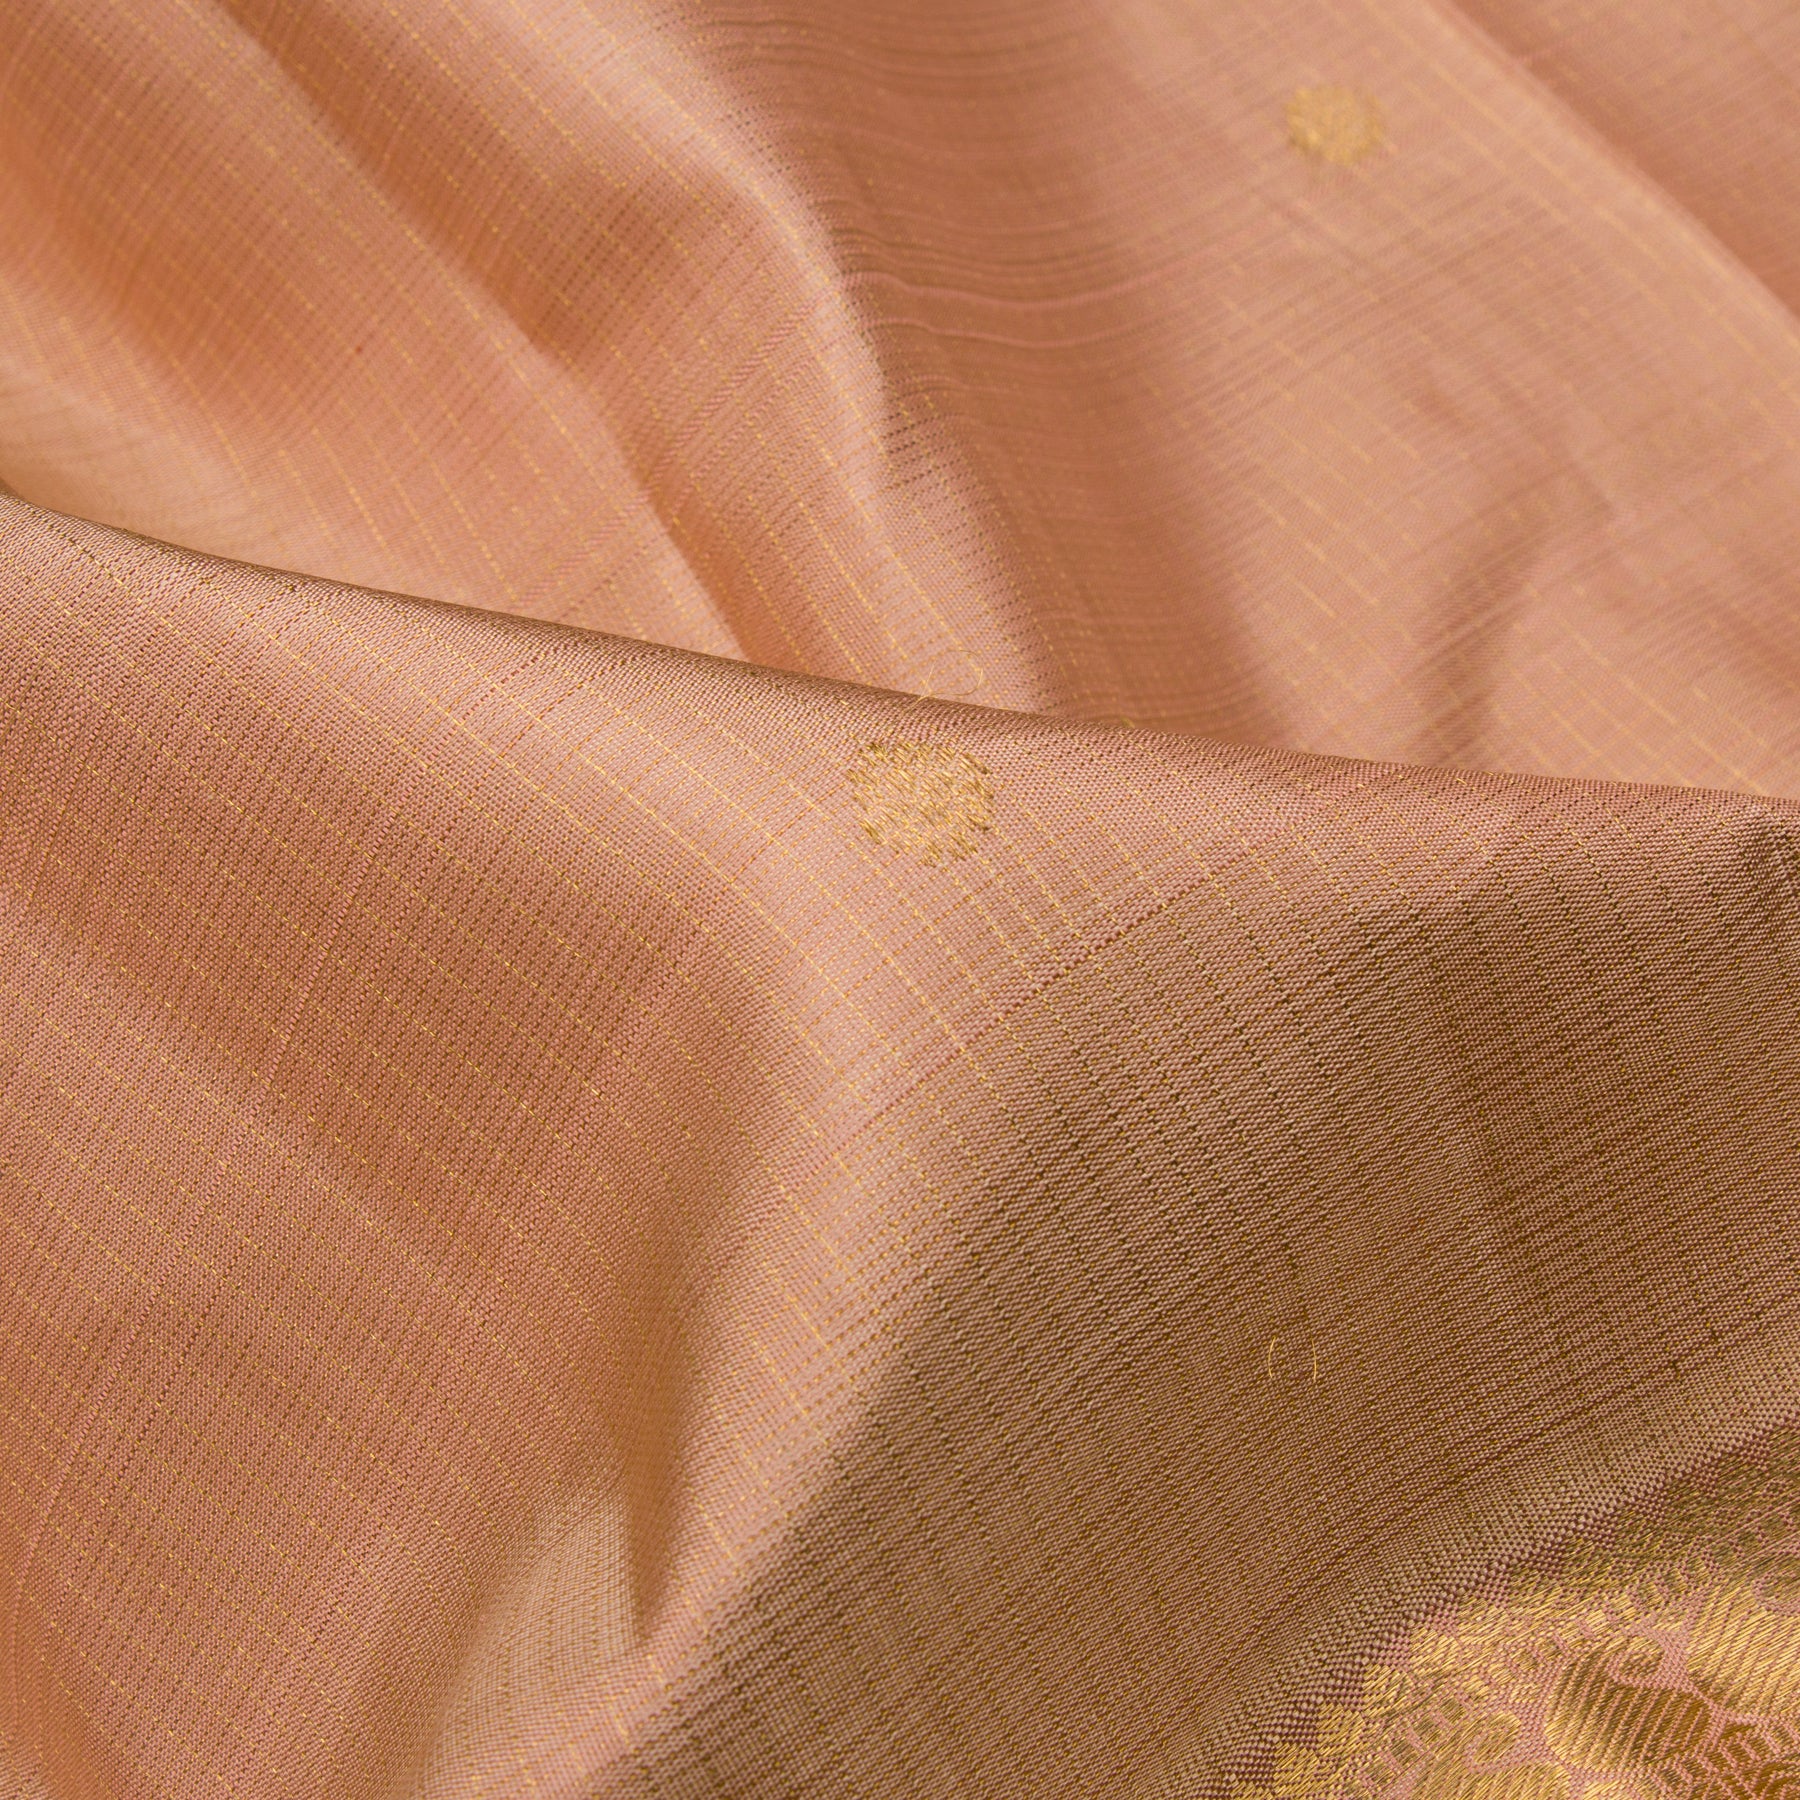 Kanakavalli Kanjivaram Silk Sari 23-110-HS001-06090 - Fabric View